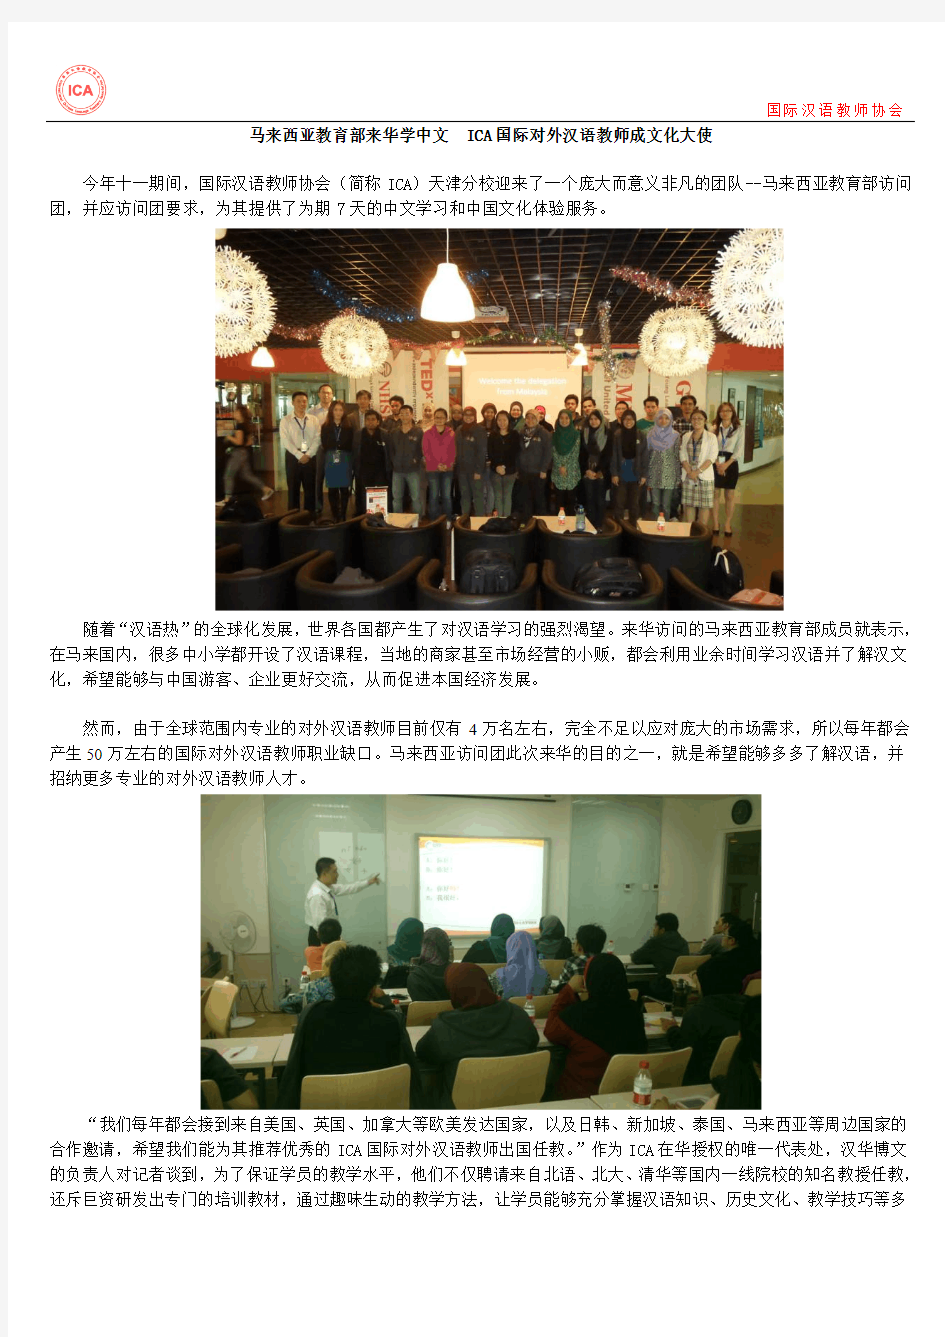 马来西亚教育部来华学中文  国际对外汉语教师成文化大使